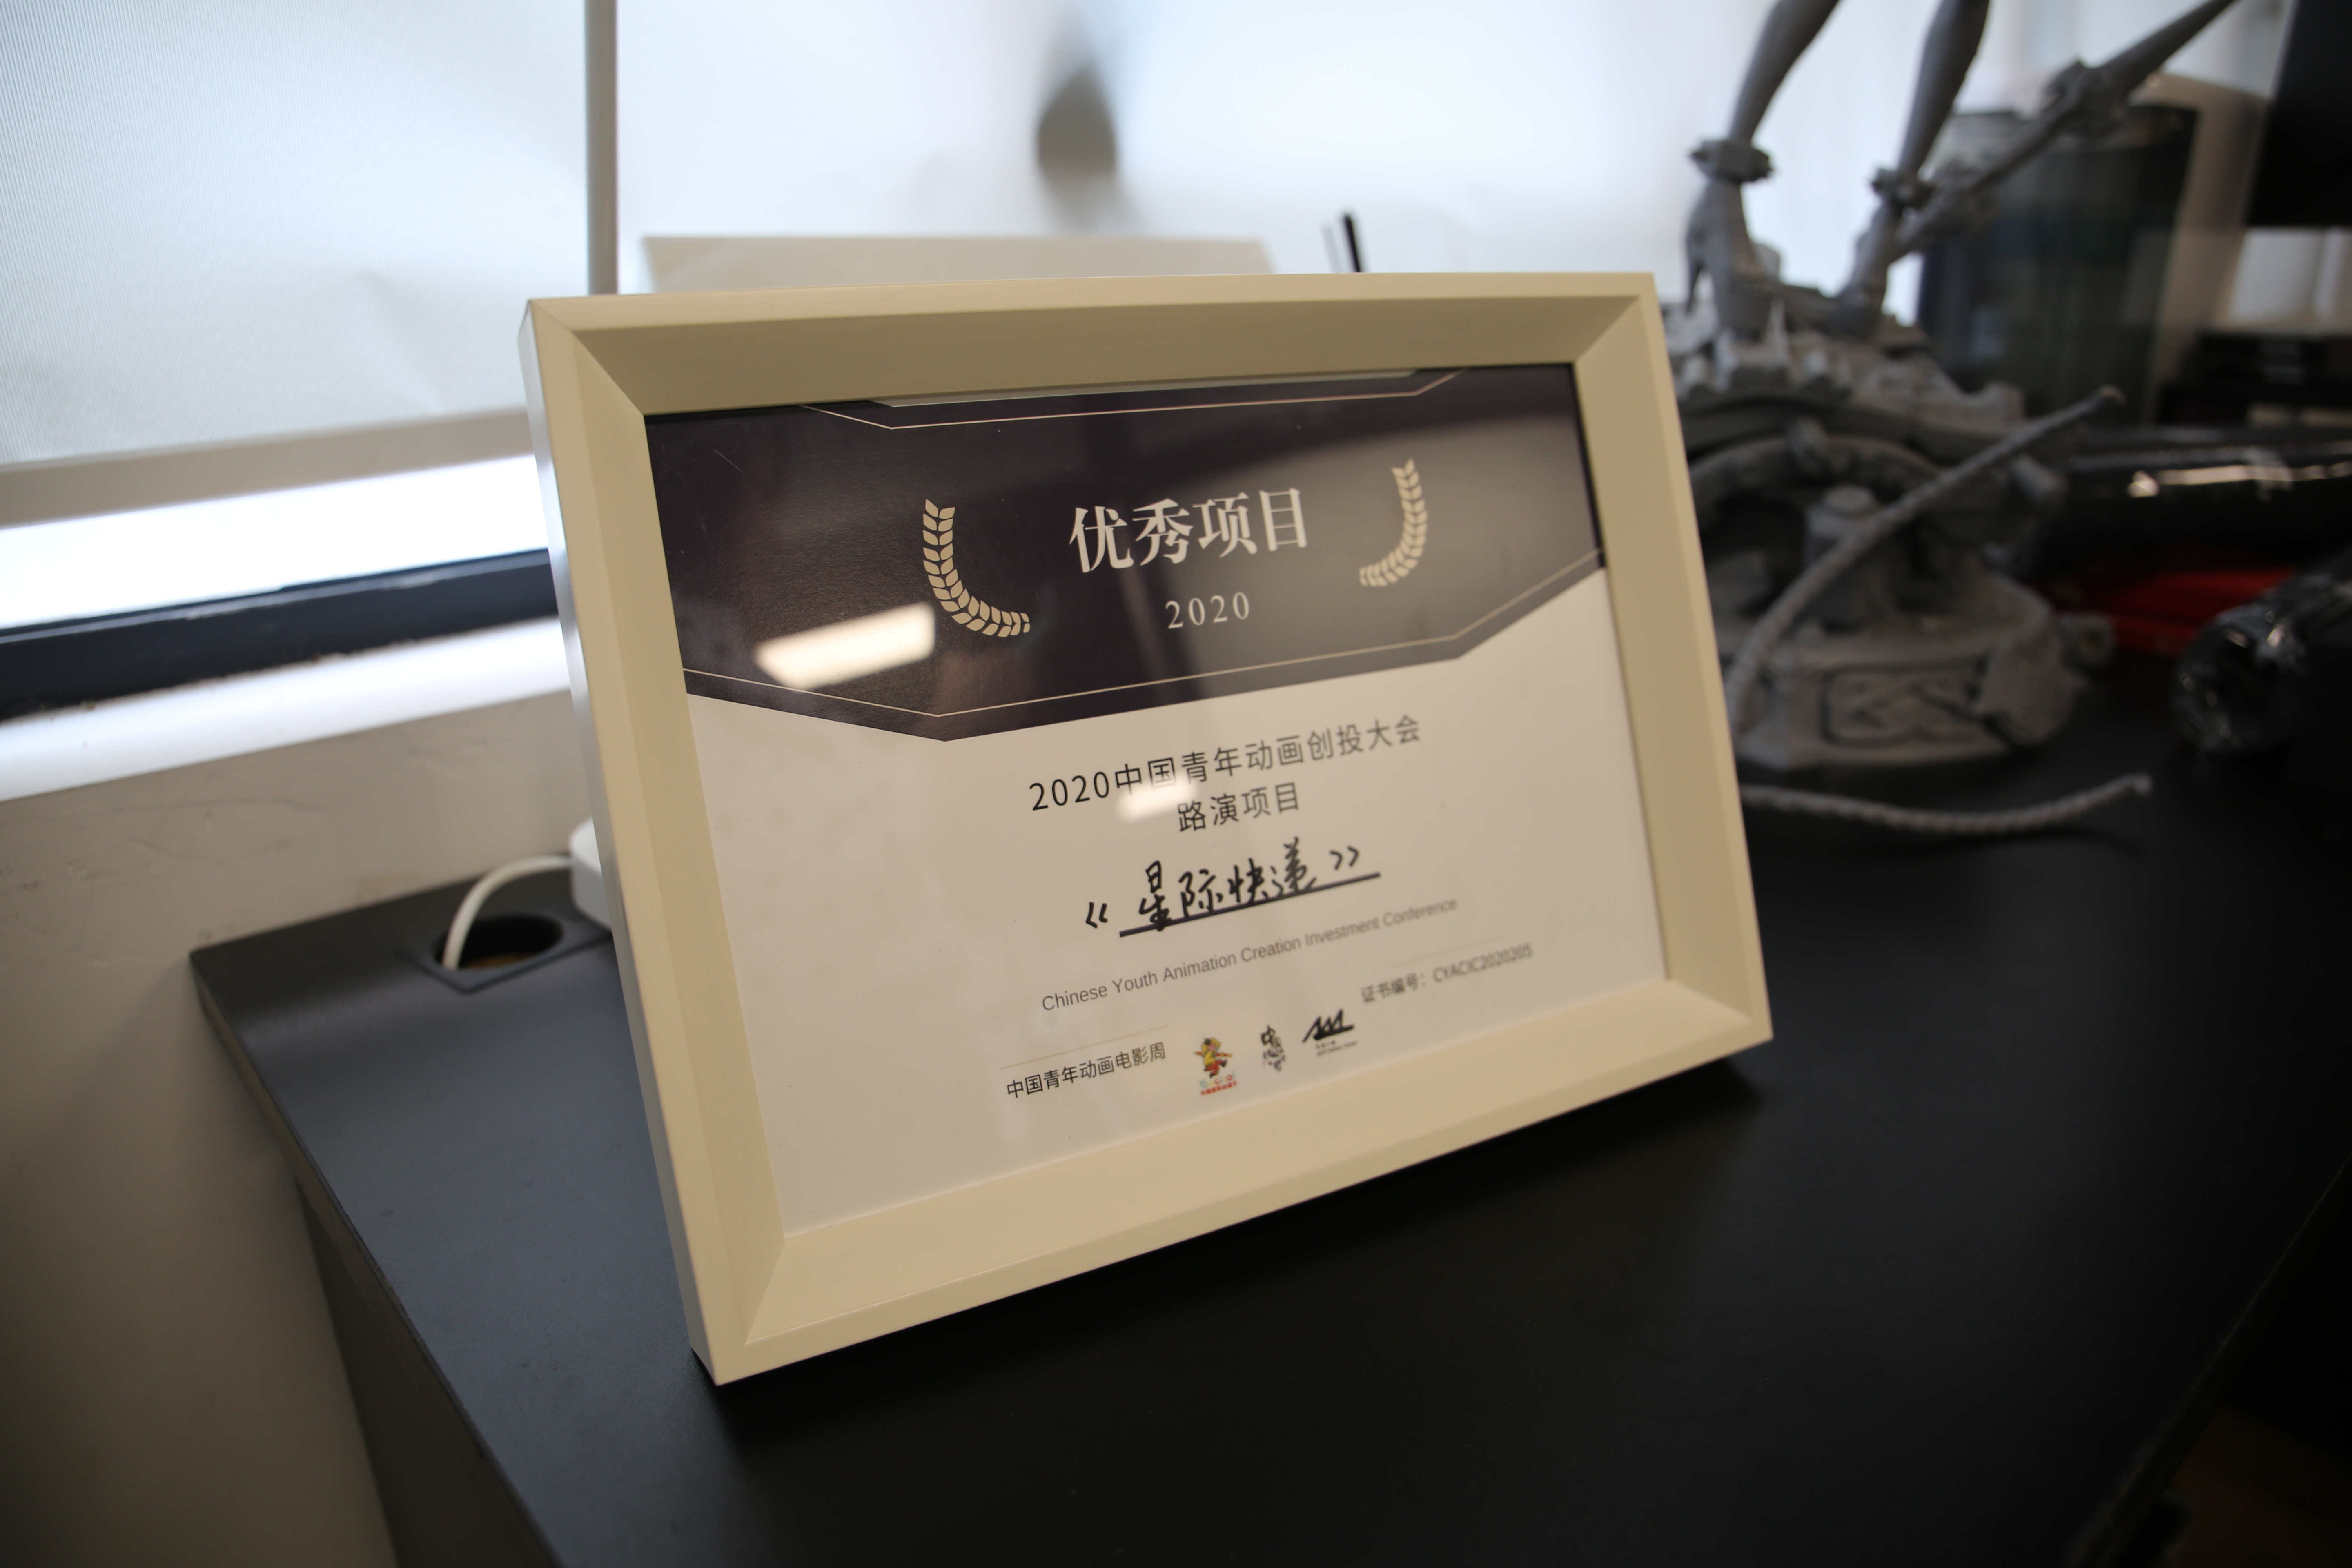 《星际快递》荣获了2020中国青年动画创投大会的优秀项目